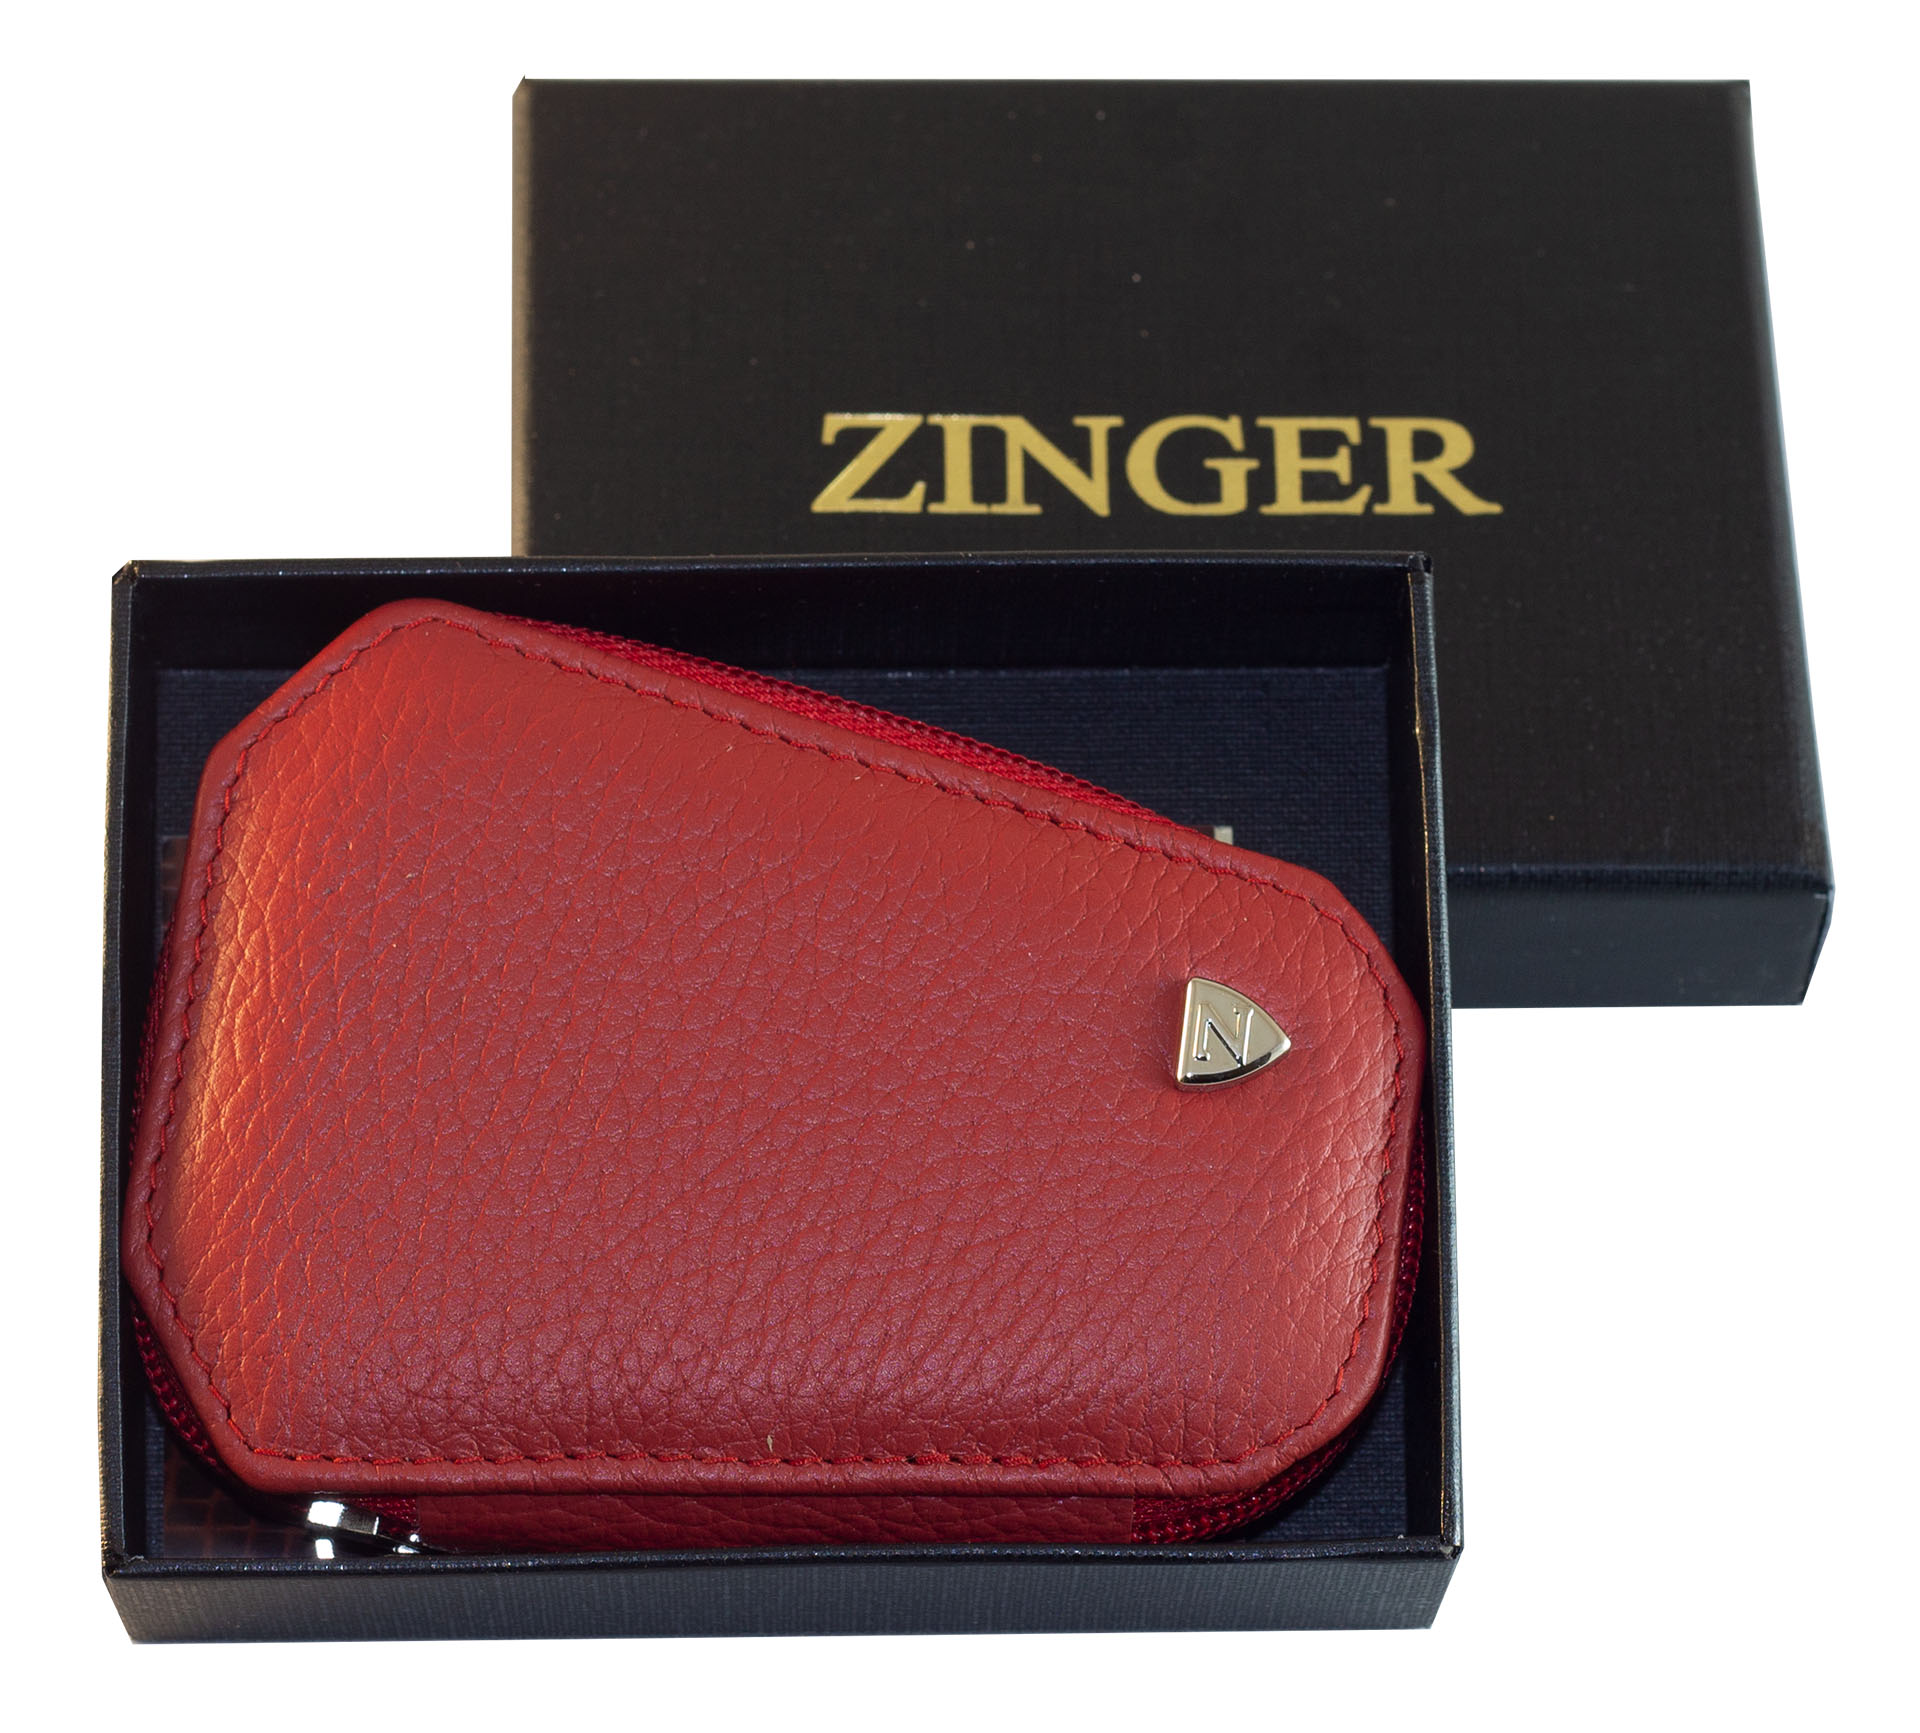 Маникюрный набор Zinger MS-7103 S красный, 6 предметов майка autoprofi carbon plus crb 902p bk rd закрытое сиденье полиэстер под карбон 9 предметов чёрный красный